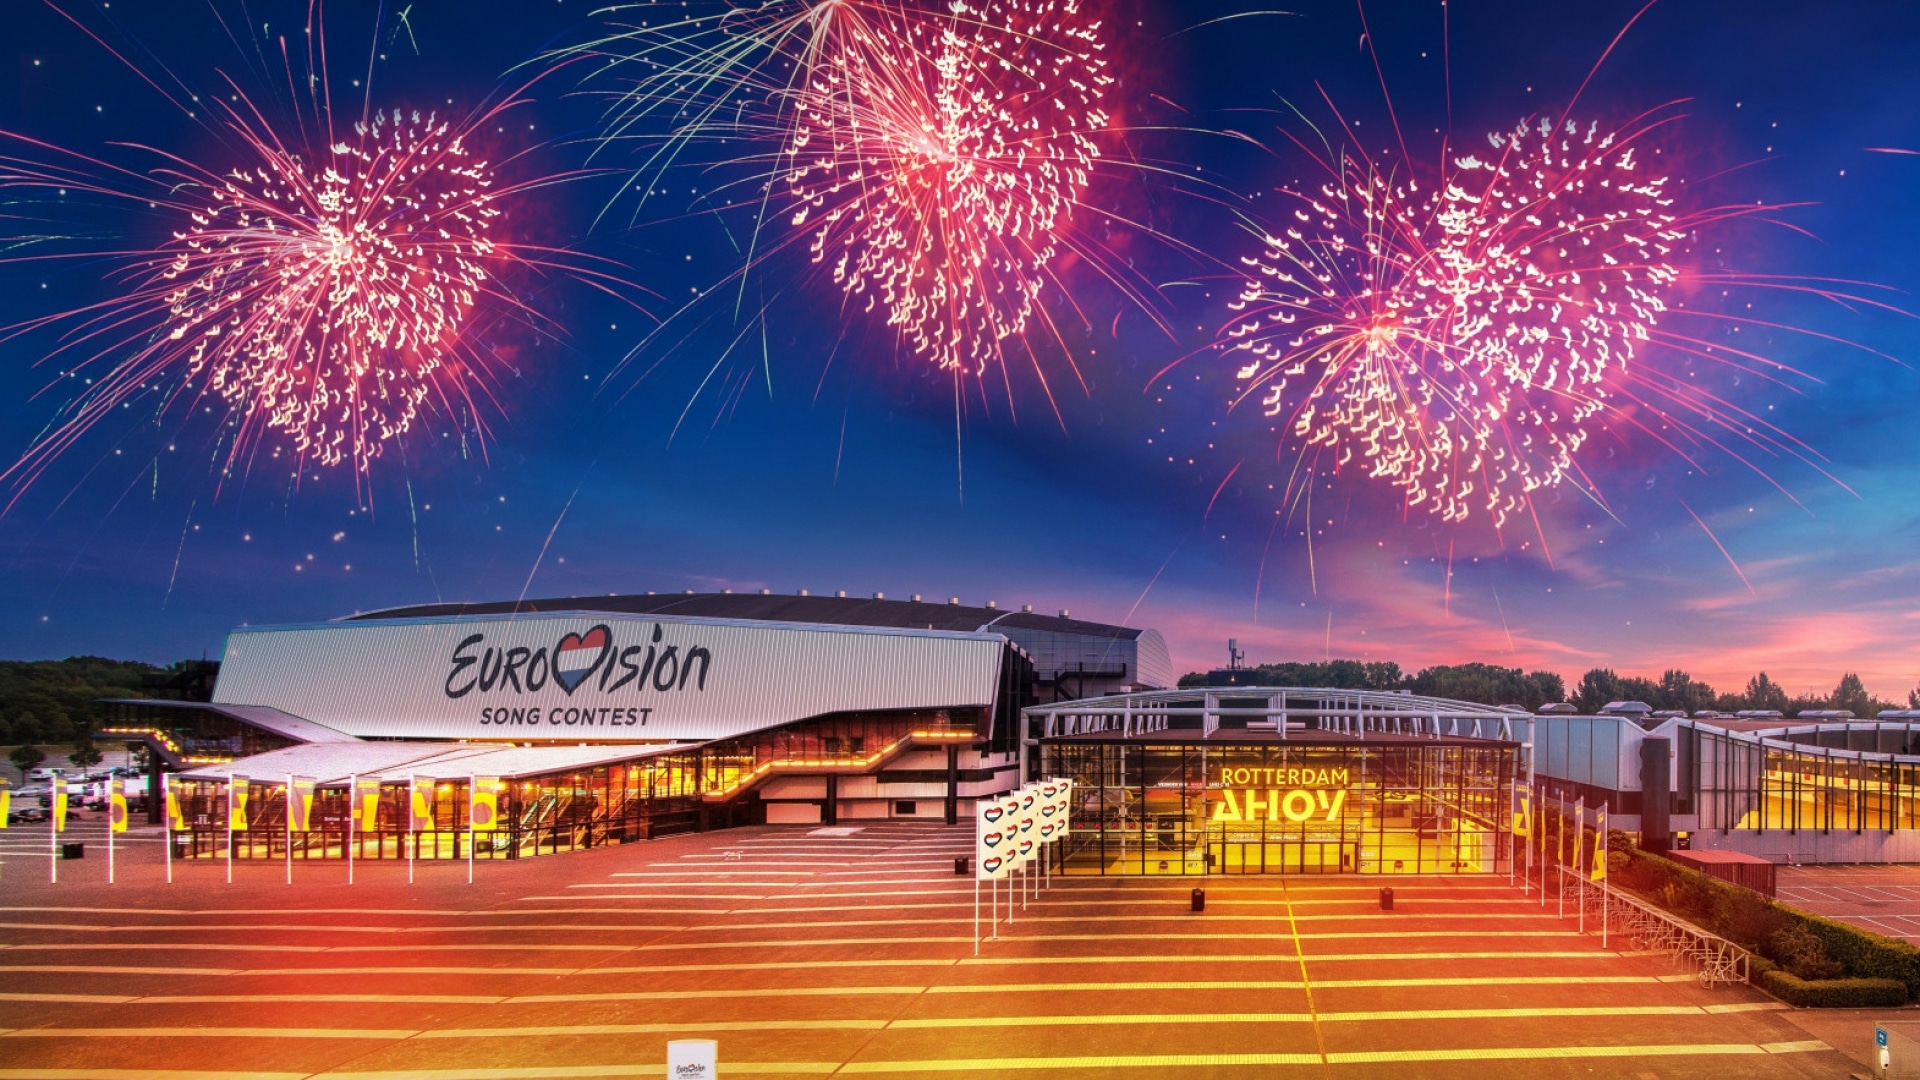 A 2020-as Eurovíziós Dalfesztivál hollandiai helyszíne, az Ahoy Rotterdam - az Ahoy Rotterdam fotógrafikája